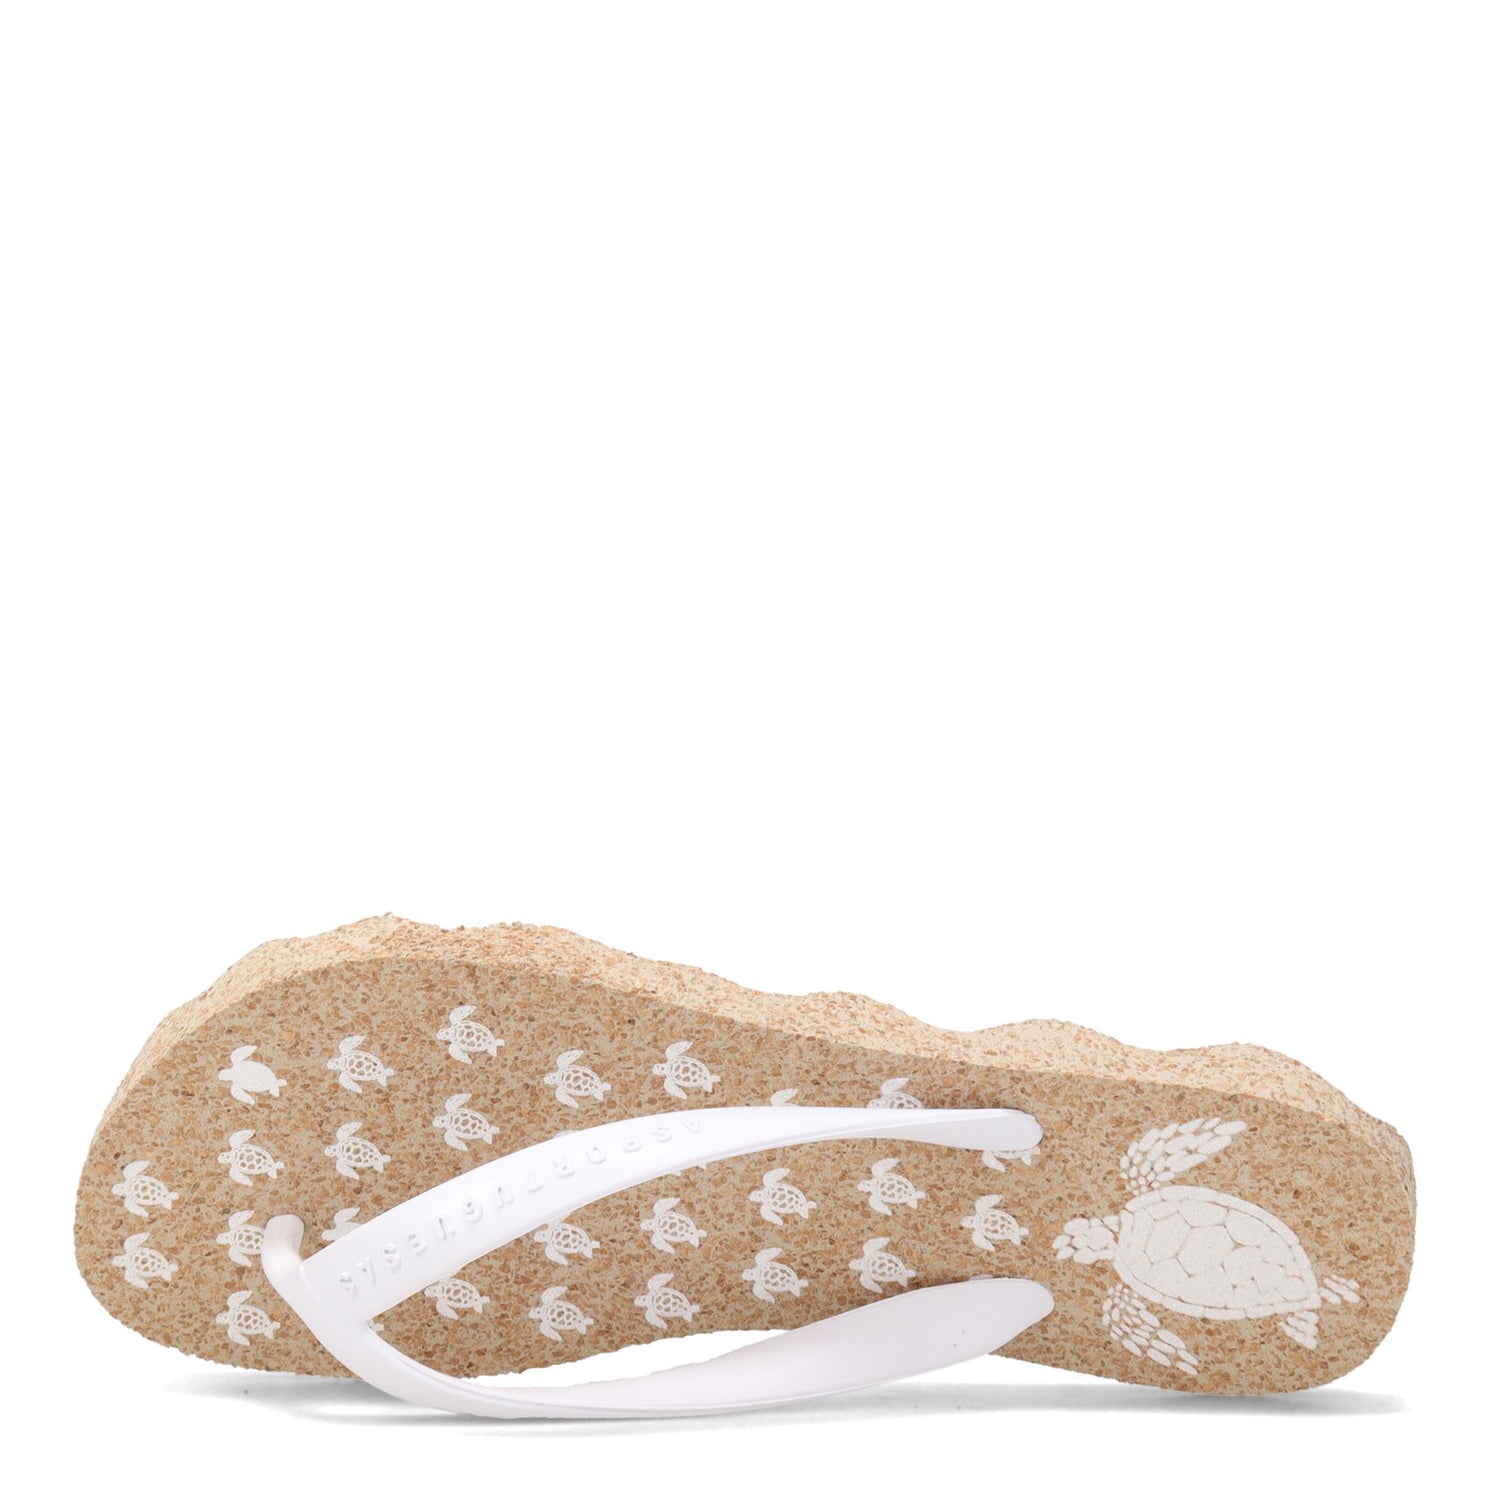 Peltz Shoes  Women's Asportuguesas Turtle Sandal NATURAL P018112-000